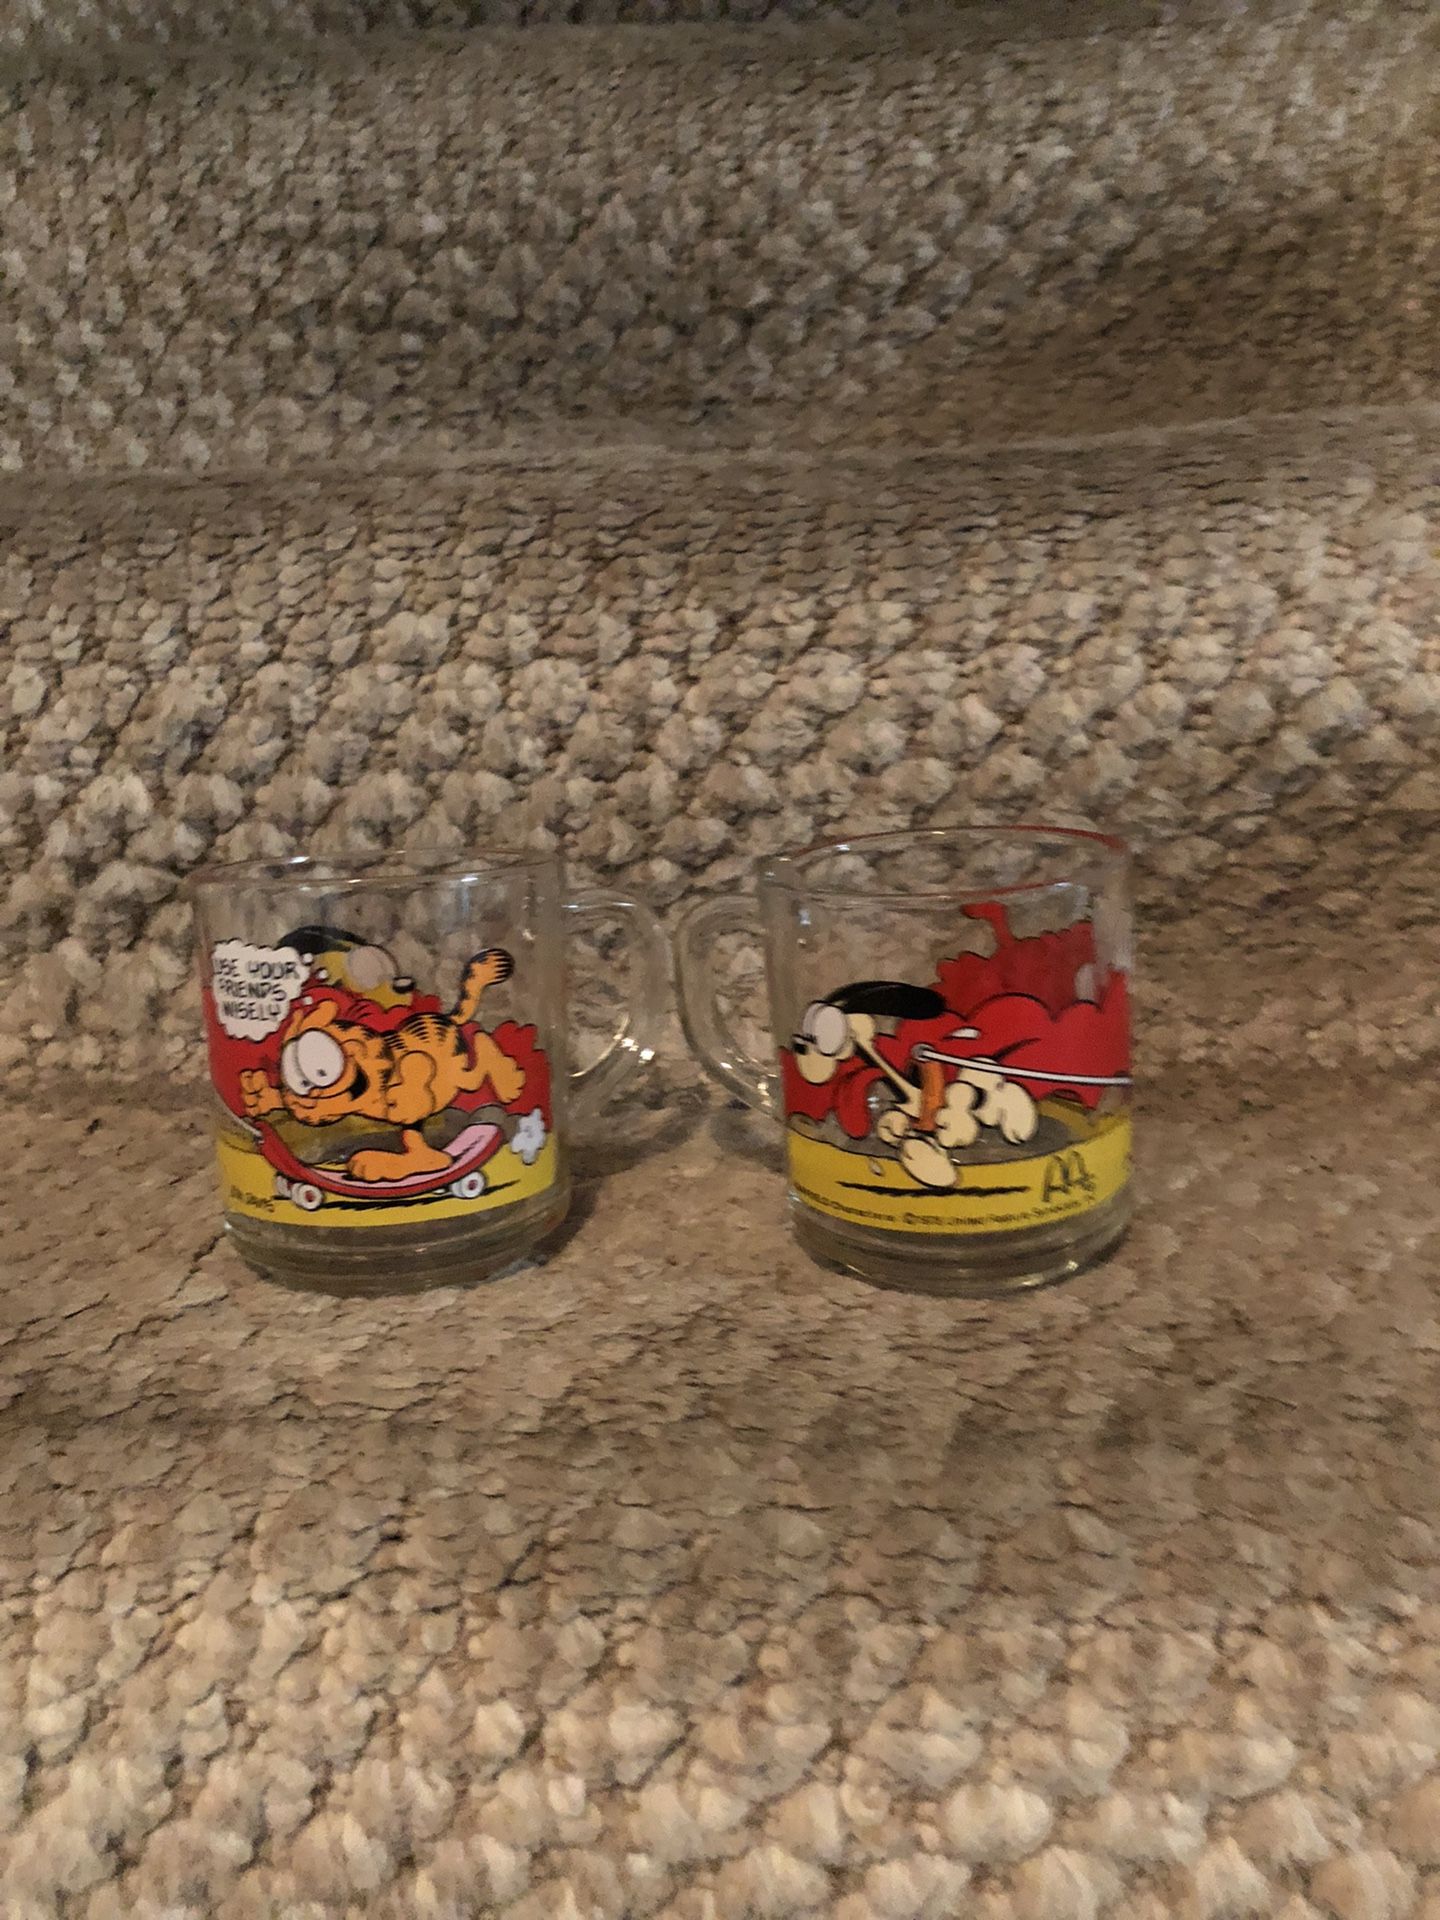 2 Garfield Glass Mugs